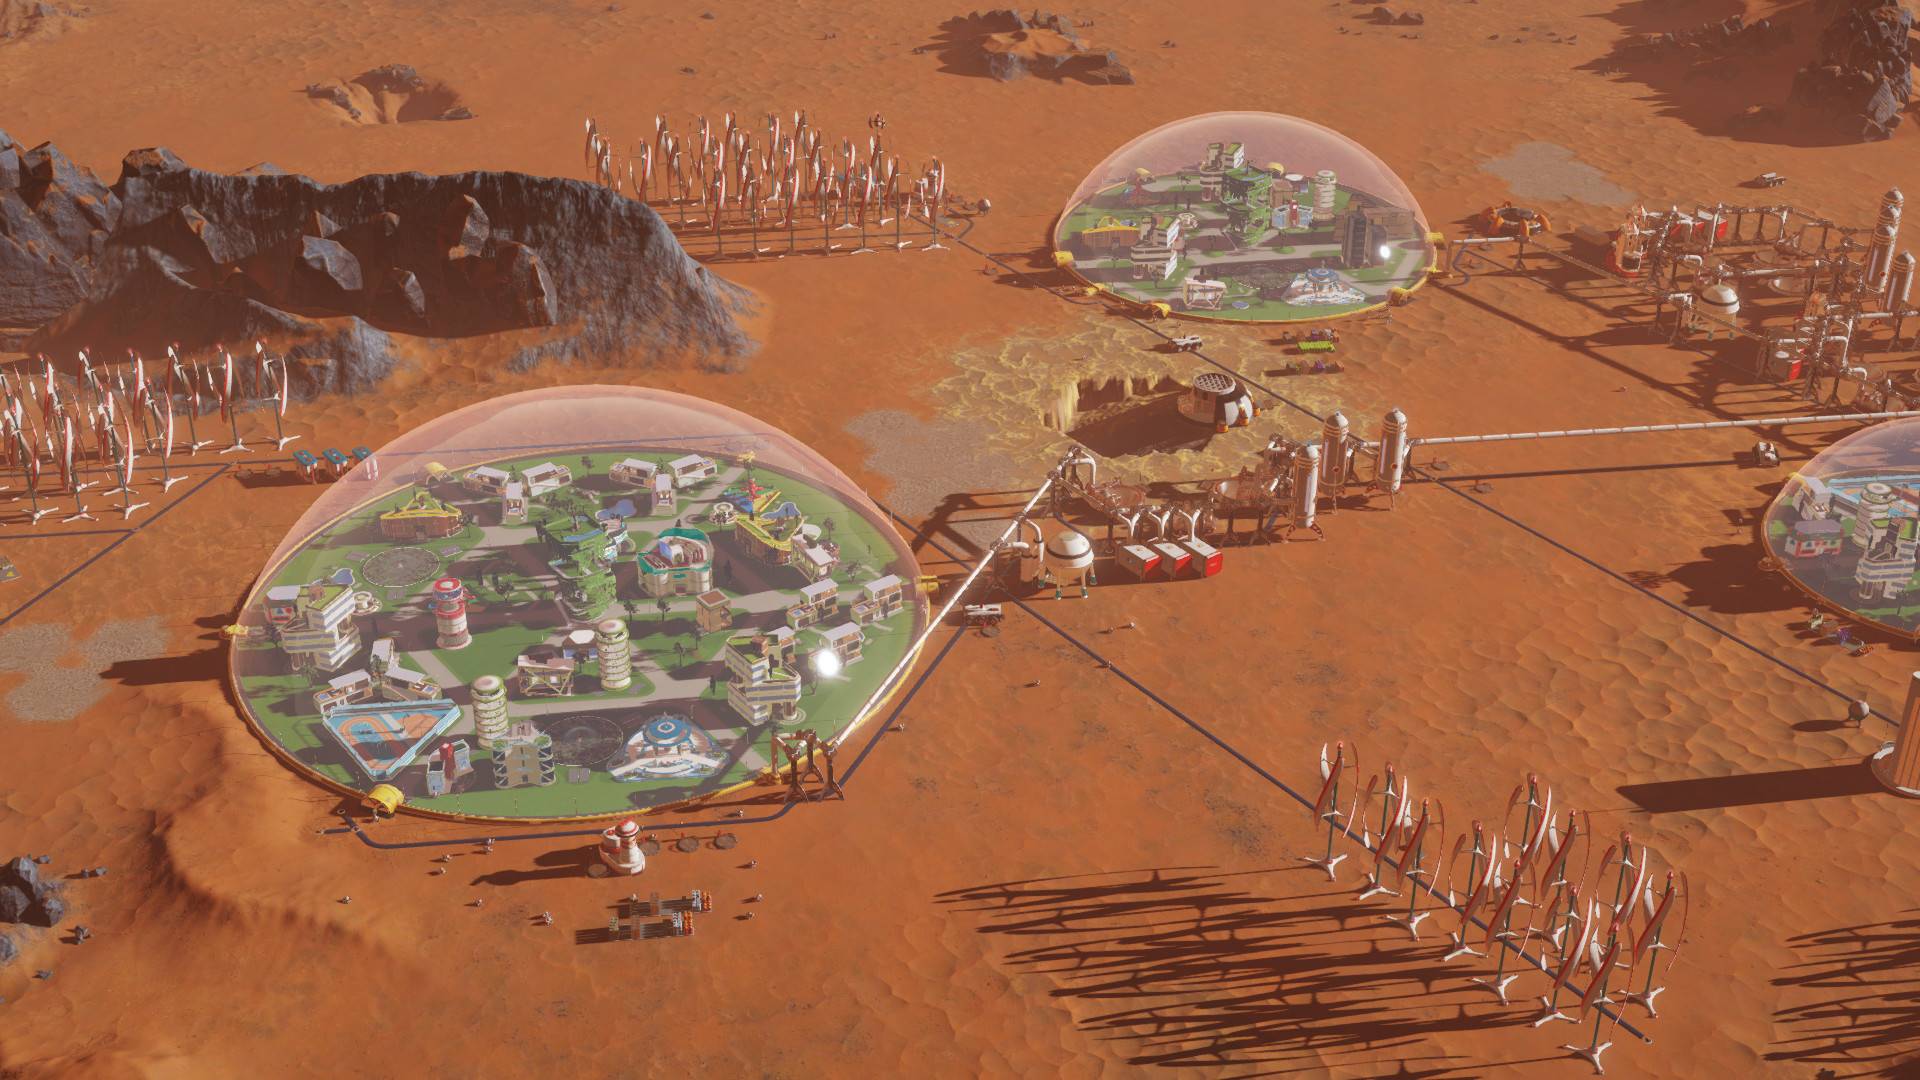 सर्वोत्कृष्ट शहर-बांधकाम खेळ: मंगळ वाचले. प्रतिमा बायोस्फेयर्समध्ये मंगळावर दोन सेटलमेंट्स दर्शविते